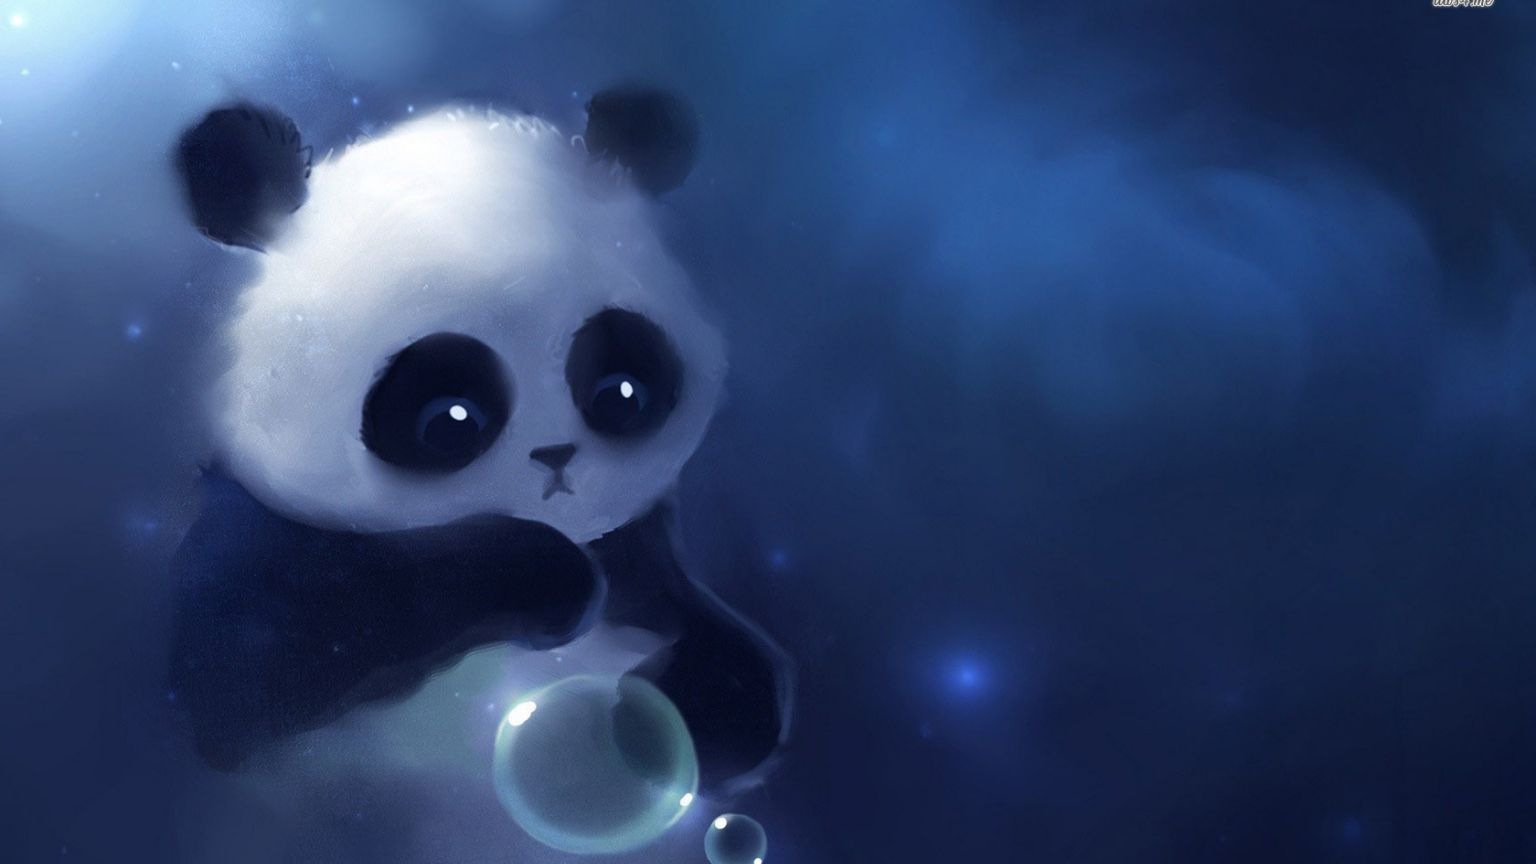 Free download cute baby panda 1680x1050 artistic wallpaper Baby Panda Wallpaper Cute [1680x1050] for your Desktop, Mobile & Tablet. Explore Cute Panda Bear Wallpaper. Red Panda Wallpaper